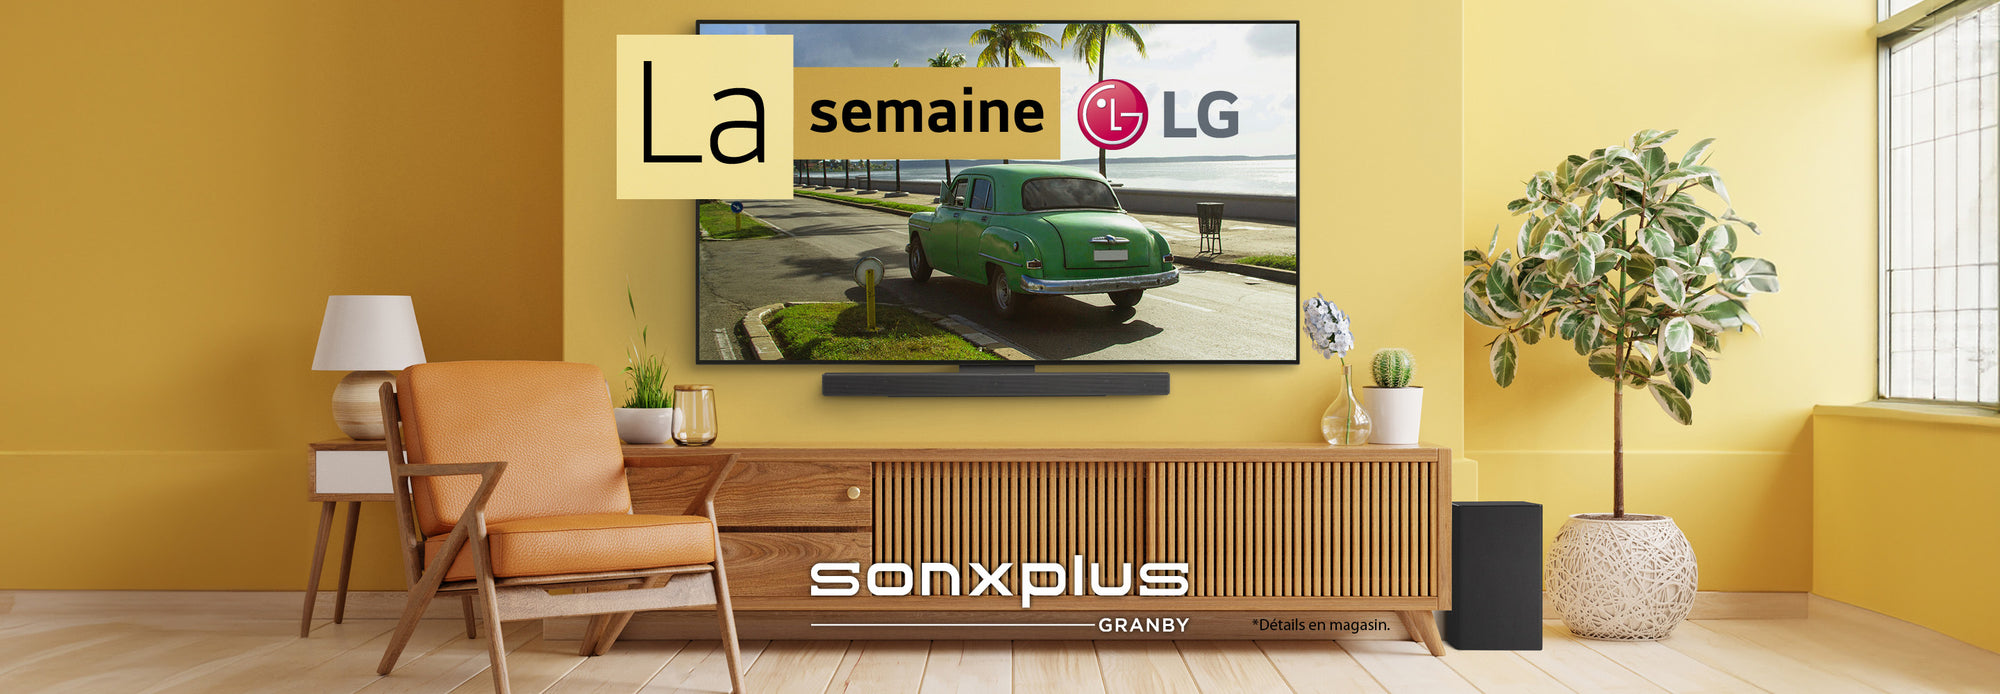 La semaine LG | SONXPLUS Granby